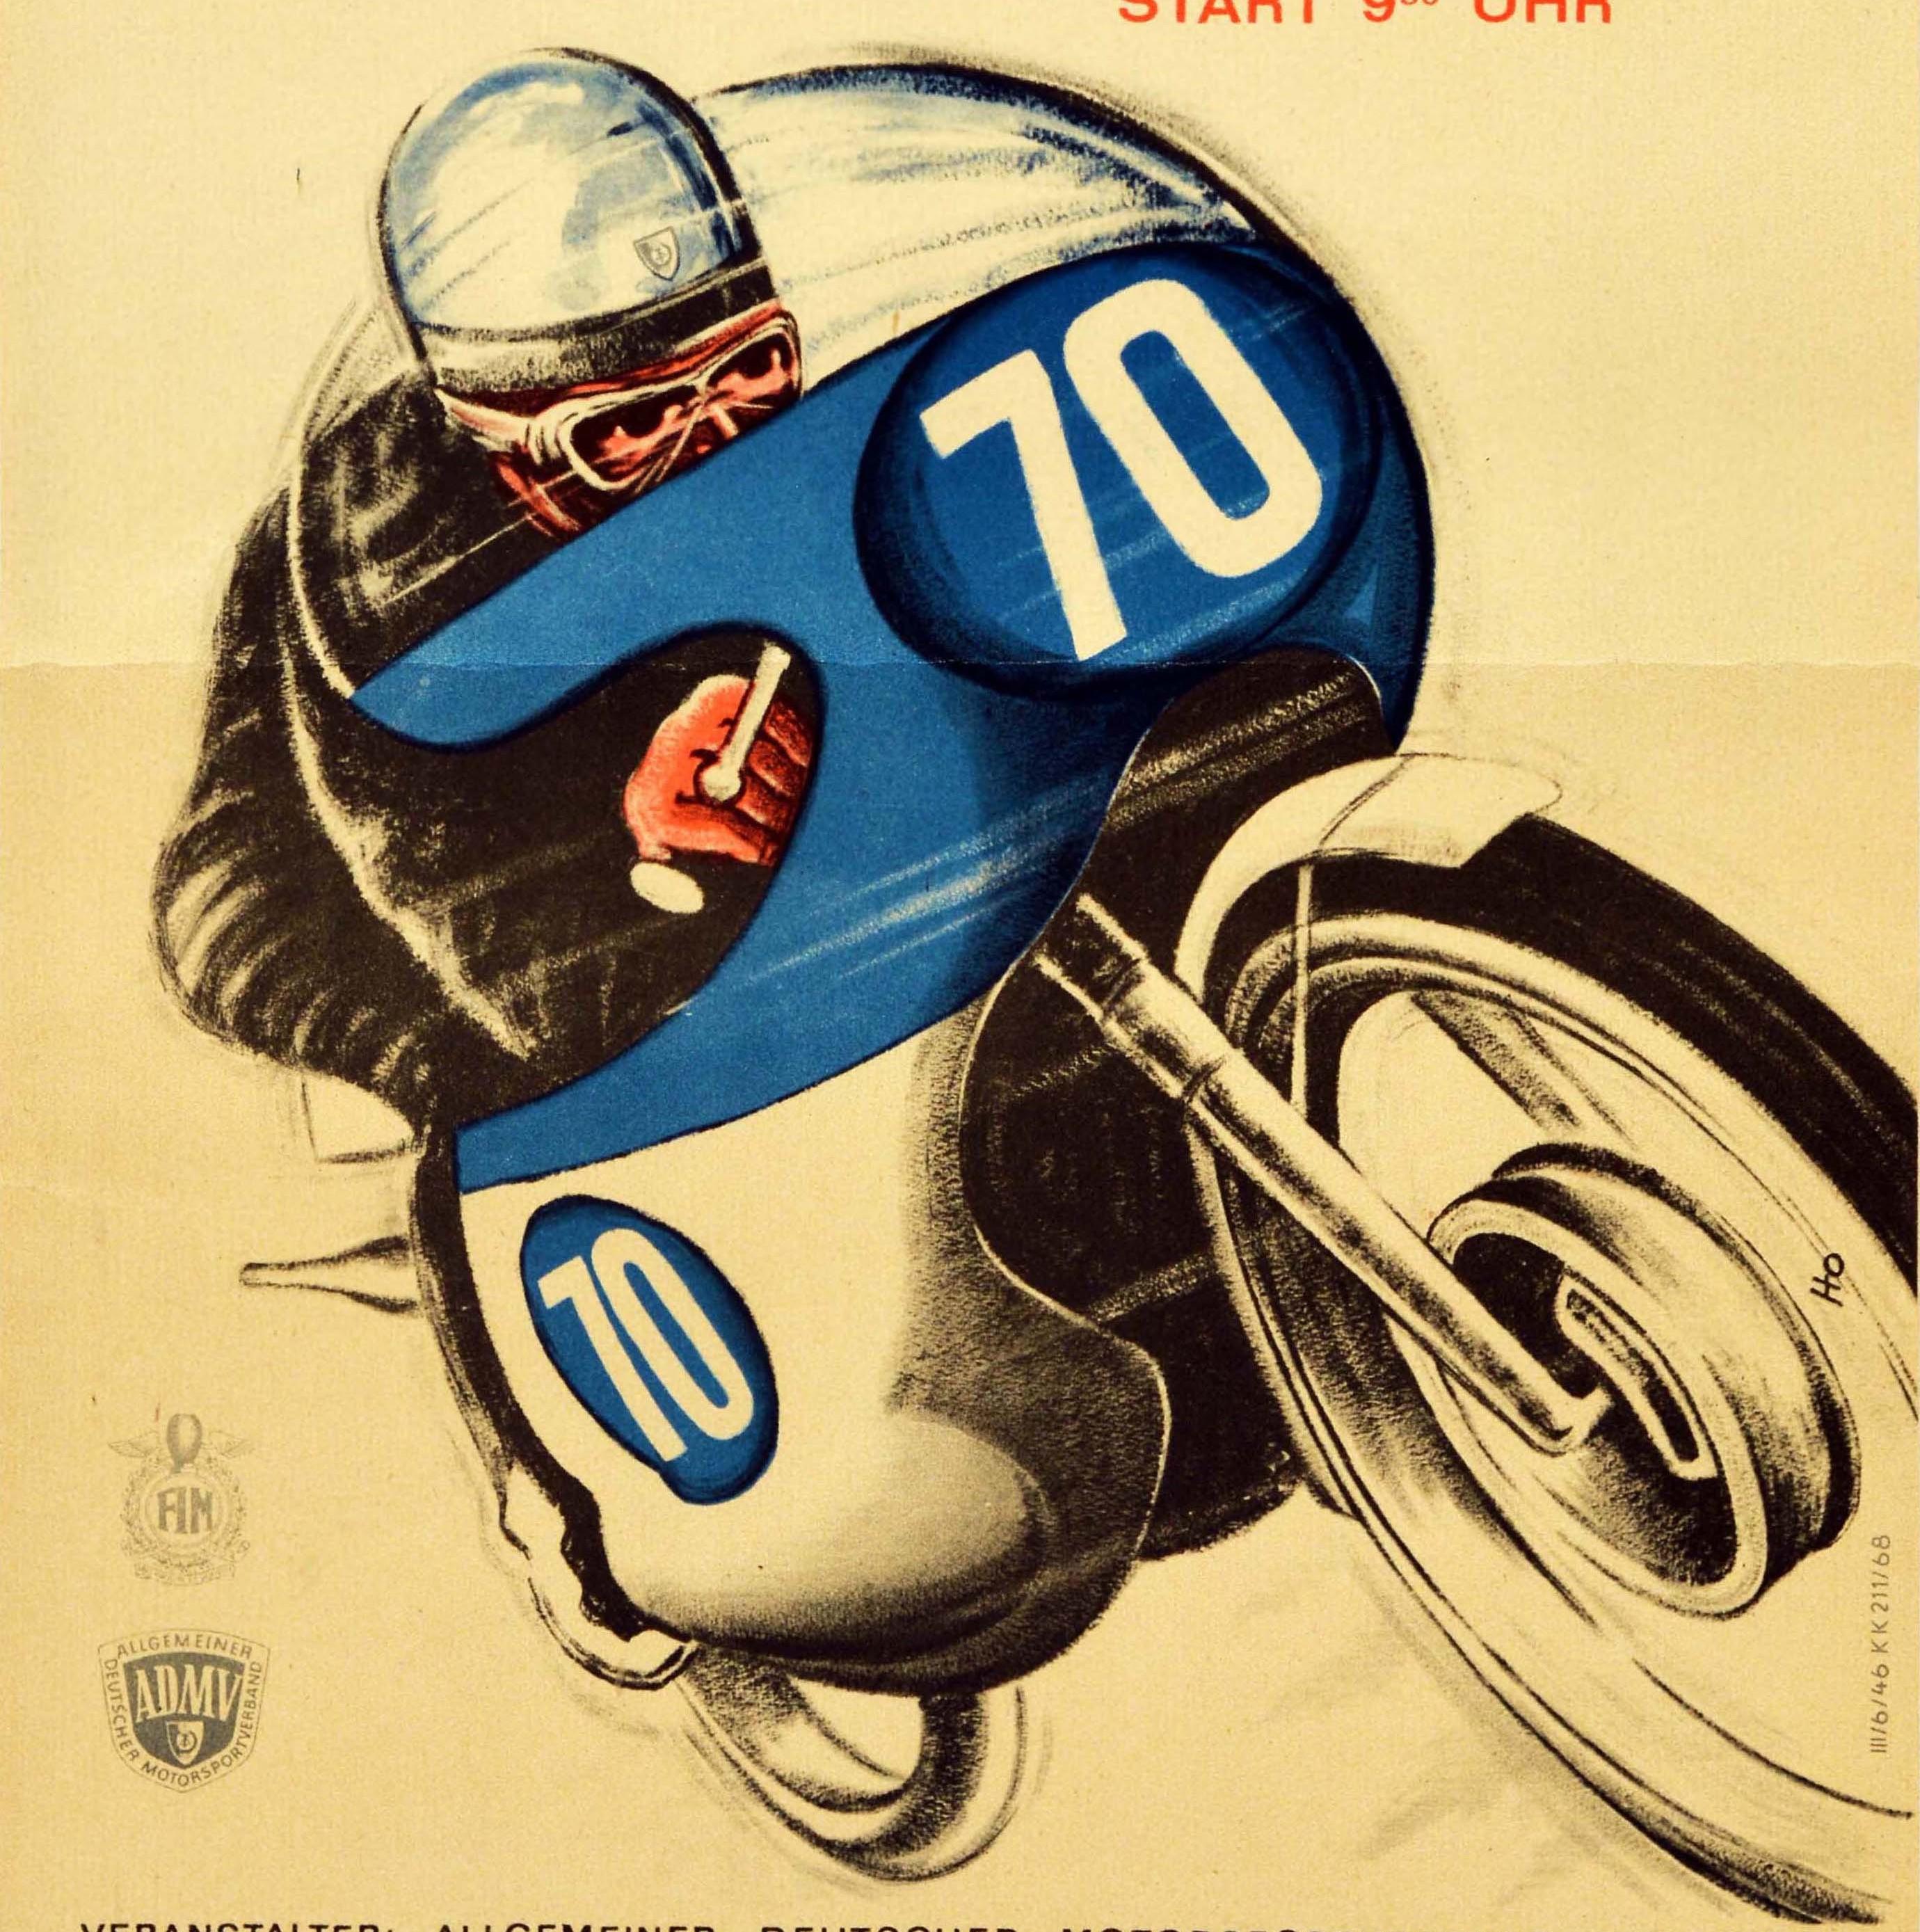 Affiche originale de course de moto d'époque pour le Grand Prix de la RDA / GDR (République démocratique allemande) qui s'est déroulé le 14 juillet 1968 sur le circuit Sachsenring à Hohenstein-Ernstthal. L'affiche présente un dessin dynamique d'un